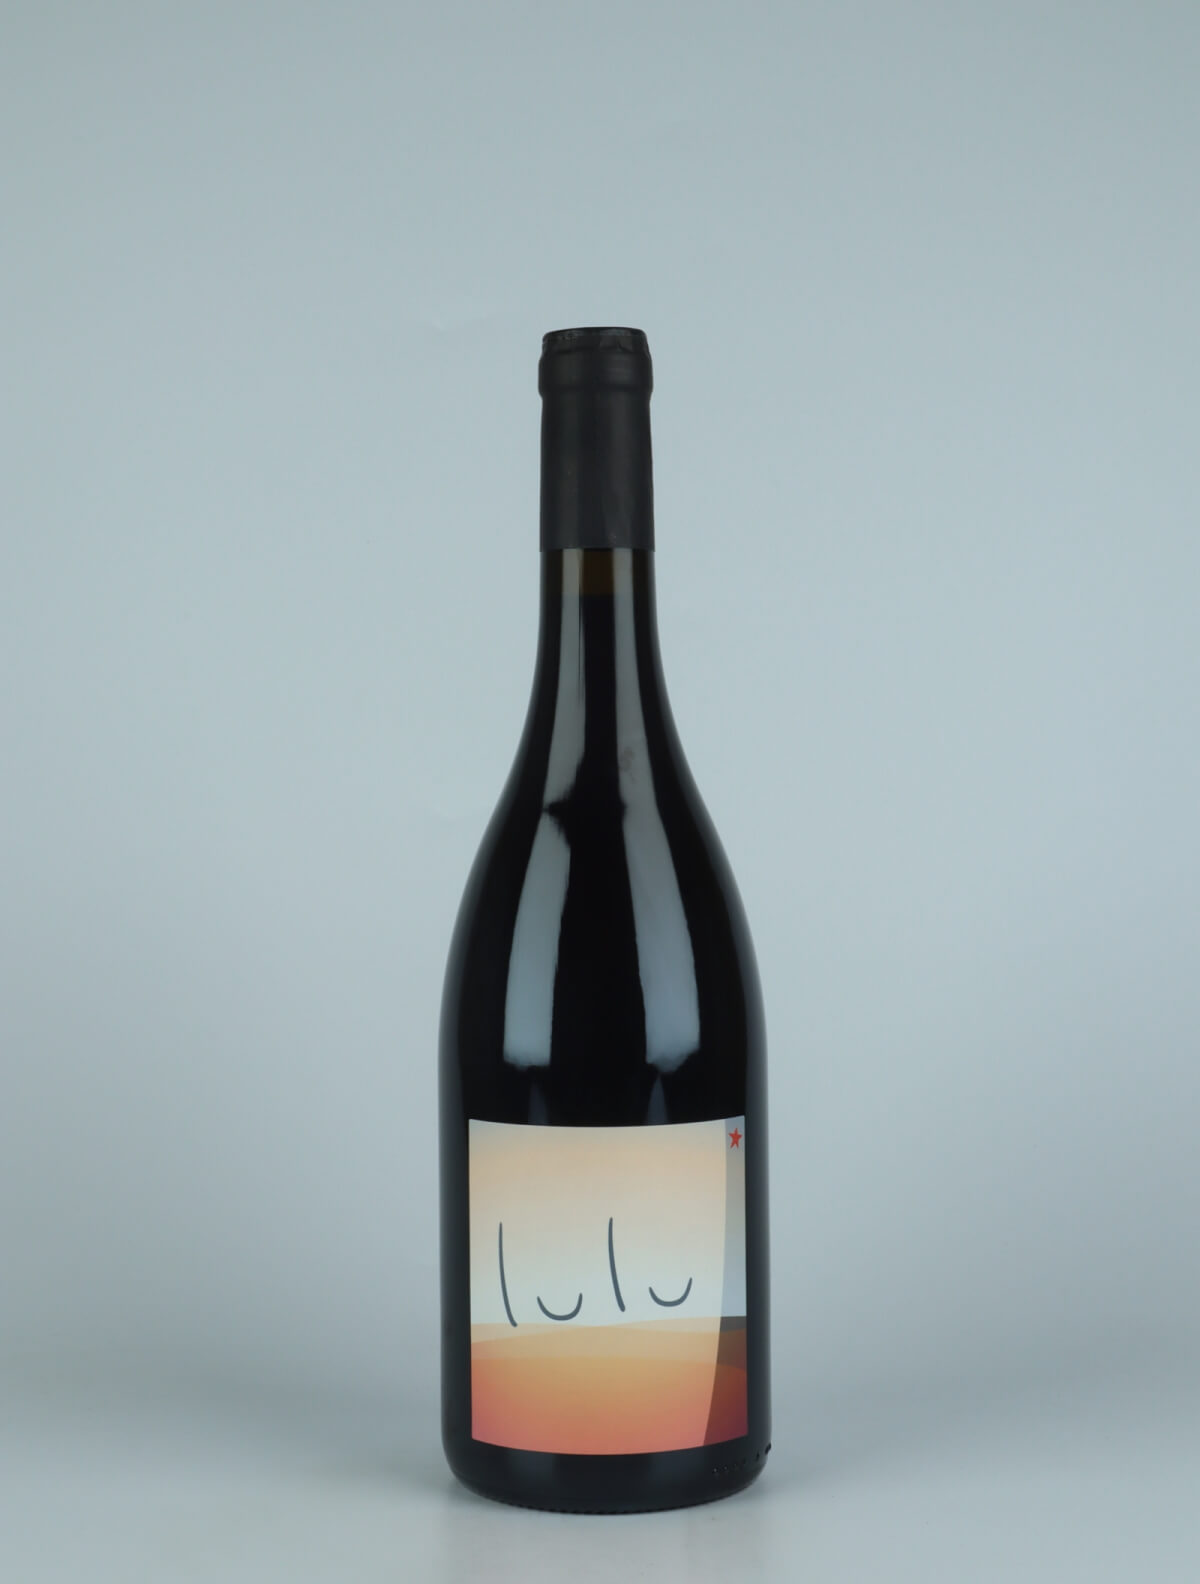 En flaske 2021 Lulu Rødvin fra Patrick Bouju, Auvergne i Frankrig